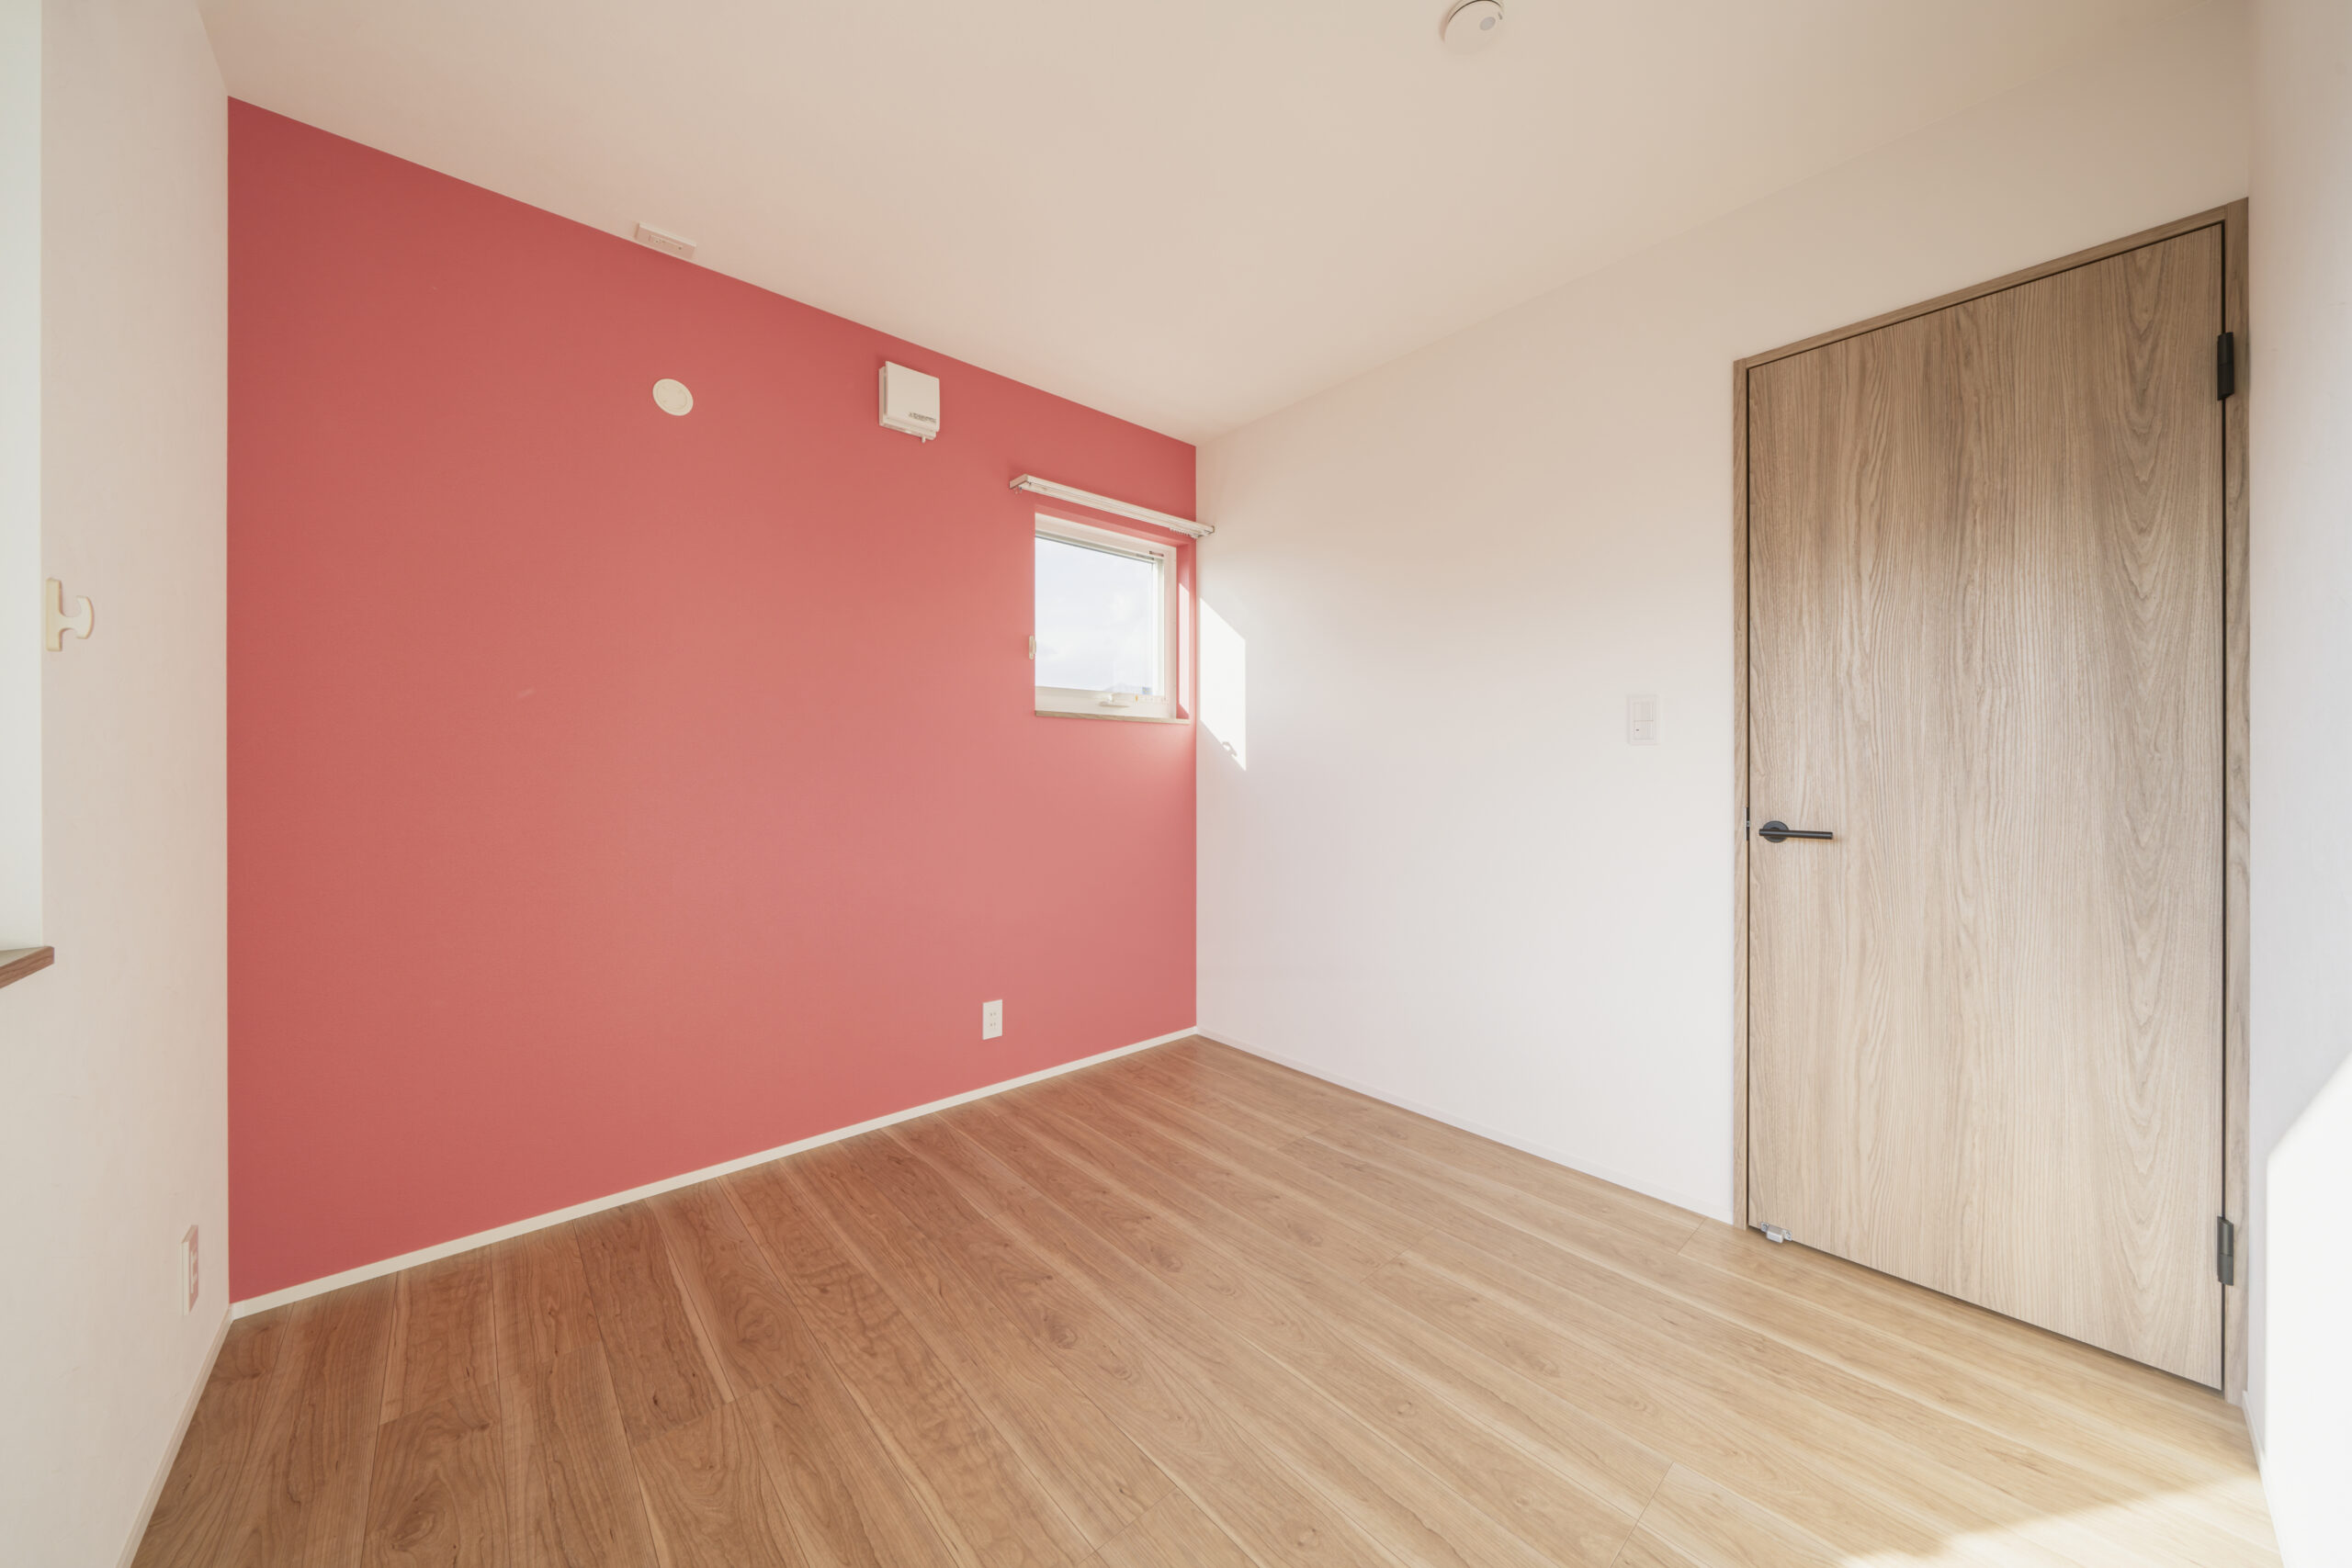 鮮やかなアクセントカラーの壁に温もりのある床の部屋には自然光がよく照らしてくれます。